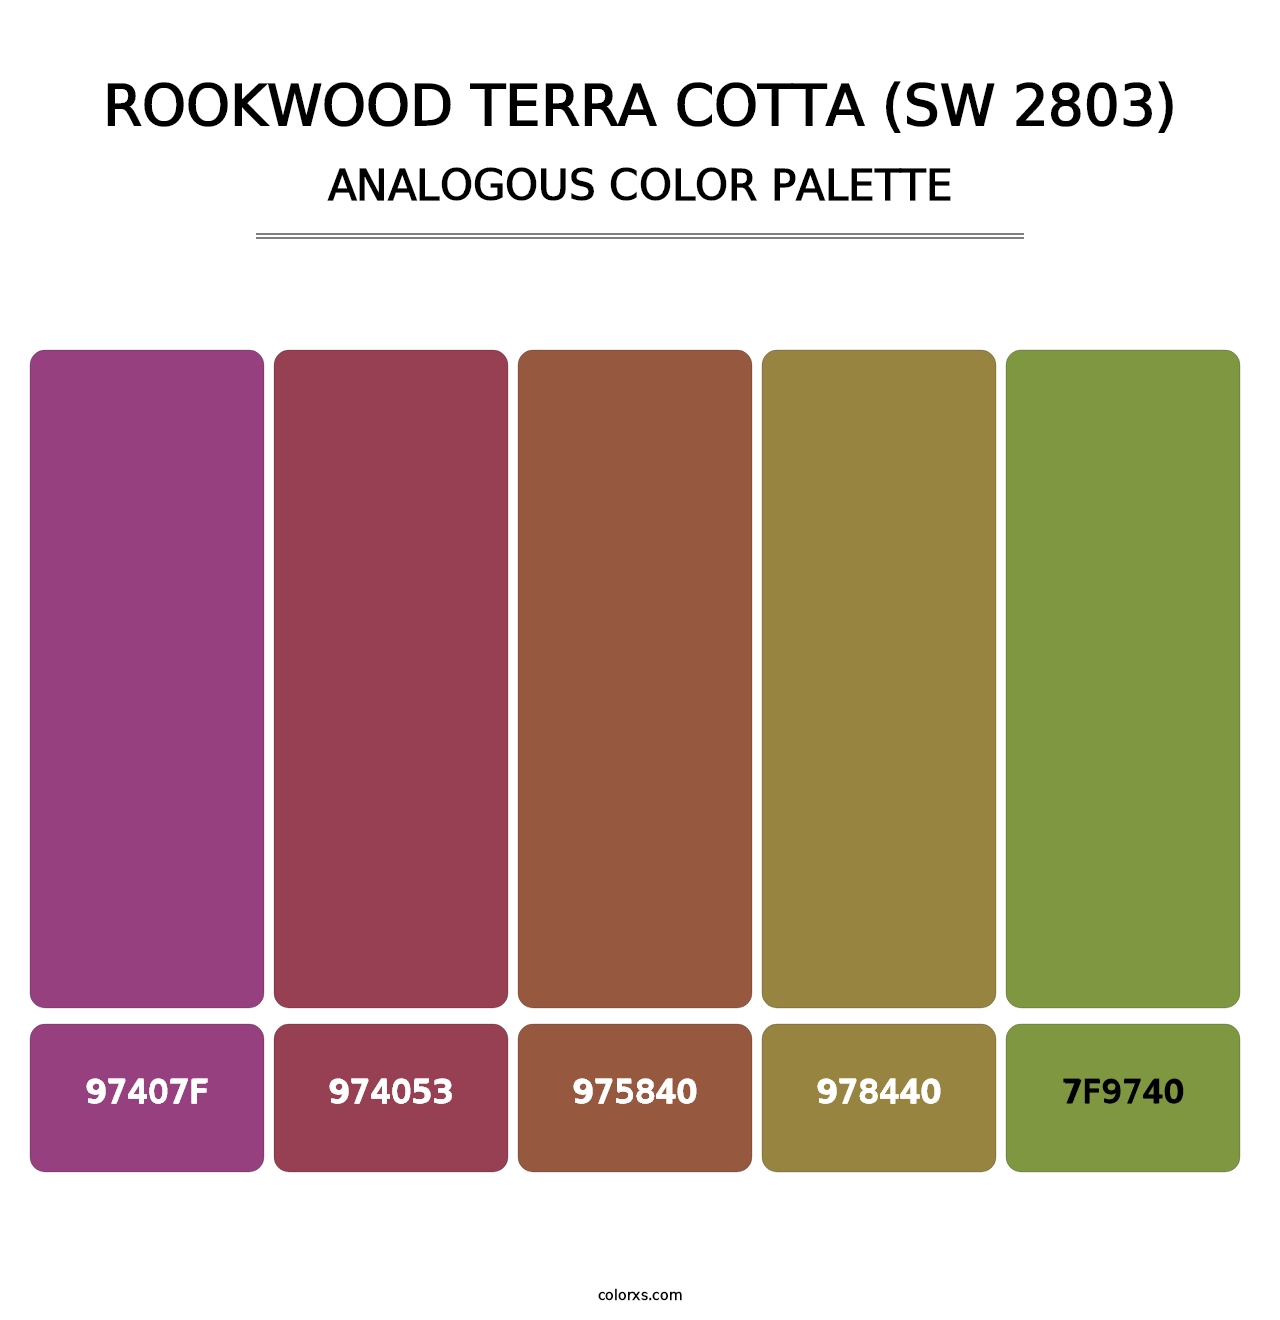 Rookwood Terra Cotta (SW 2803) - Analogous Color Palette